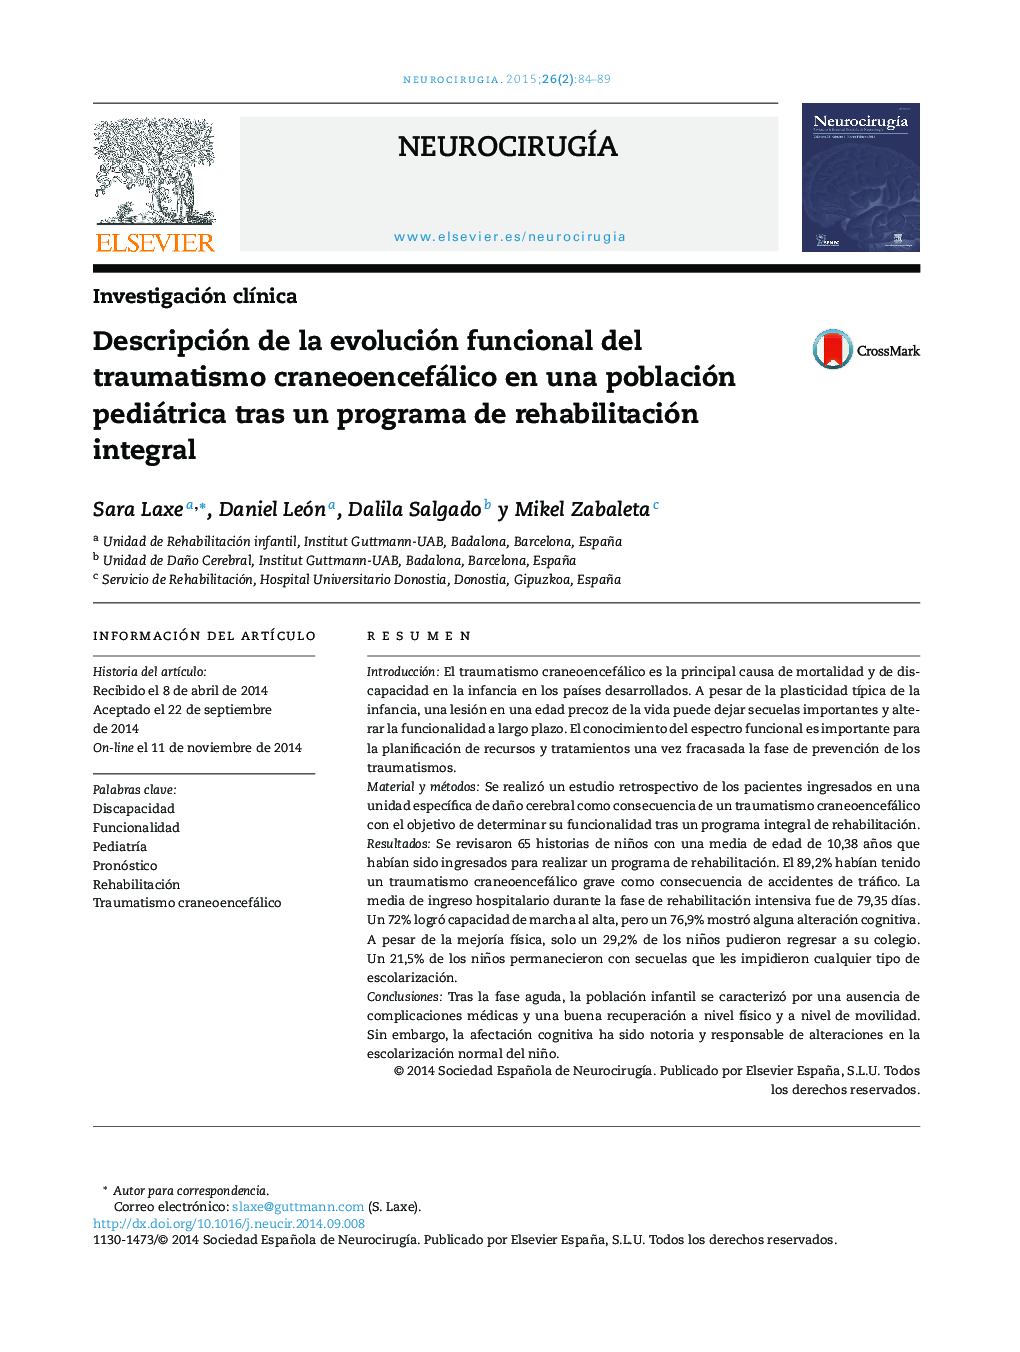 Descripción de la evolución funcional del traumatismo craneoencefálico en una población pediátrica tras un programa de rehabilitación integral